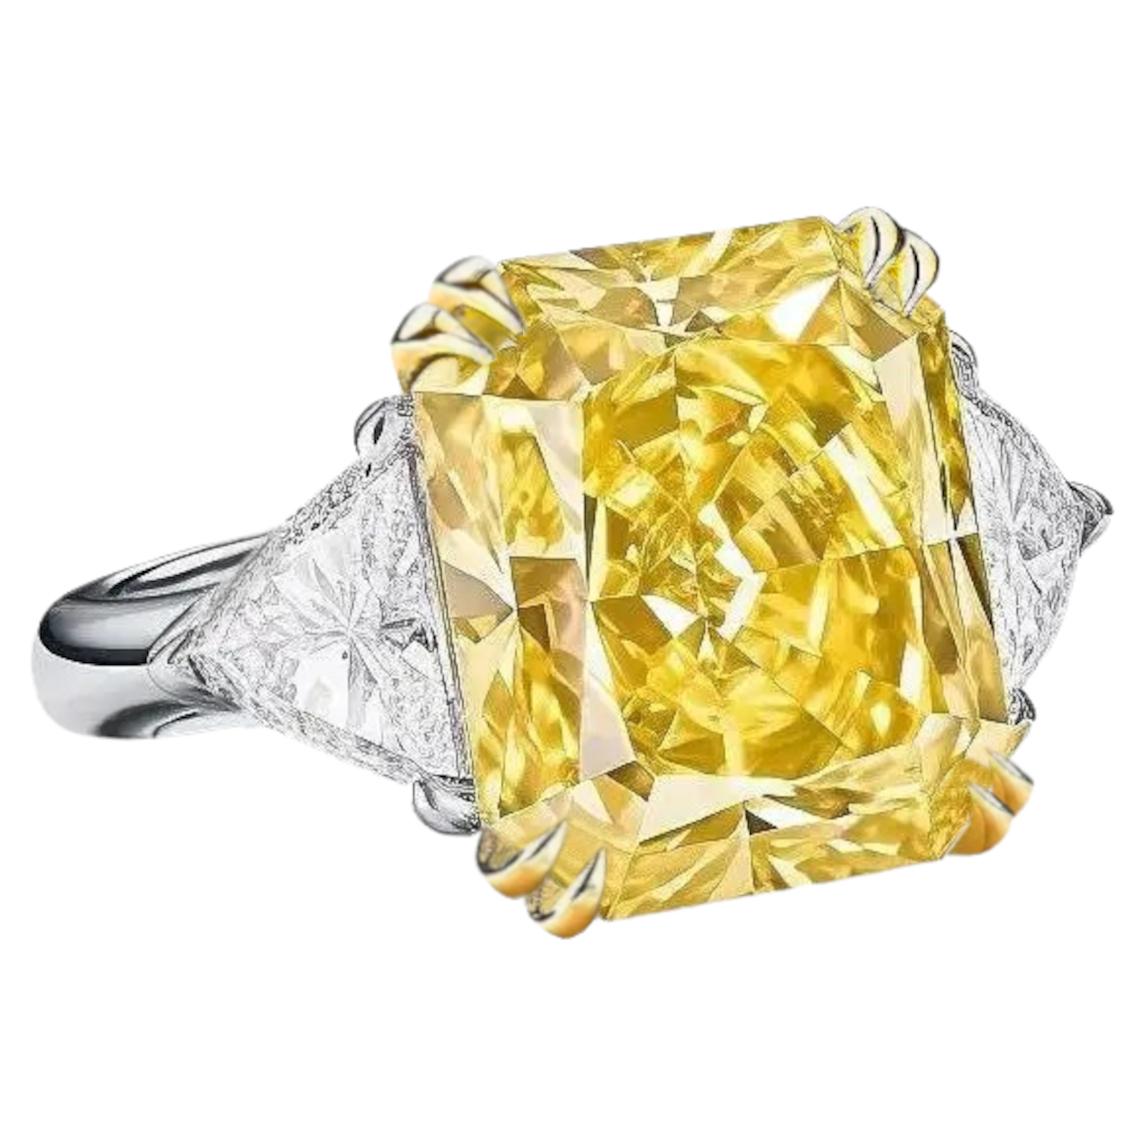 Investieren Sie in Eleganz und Rarität: Der 10 Karat Fancy Yellow Radiant Cut Diamantring!

Bereiten Sie sich darauf vor, in das Reich wahrer Opulenz und Exklusivität einzutreten mit unserem bemerkenswerten 10 Karat Fancy Yellow Radiant Cut